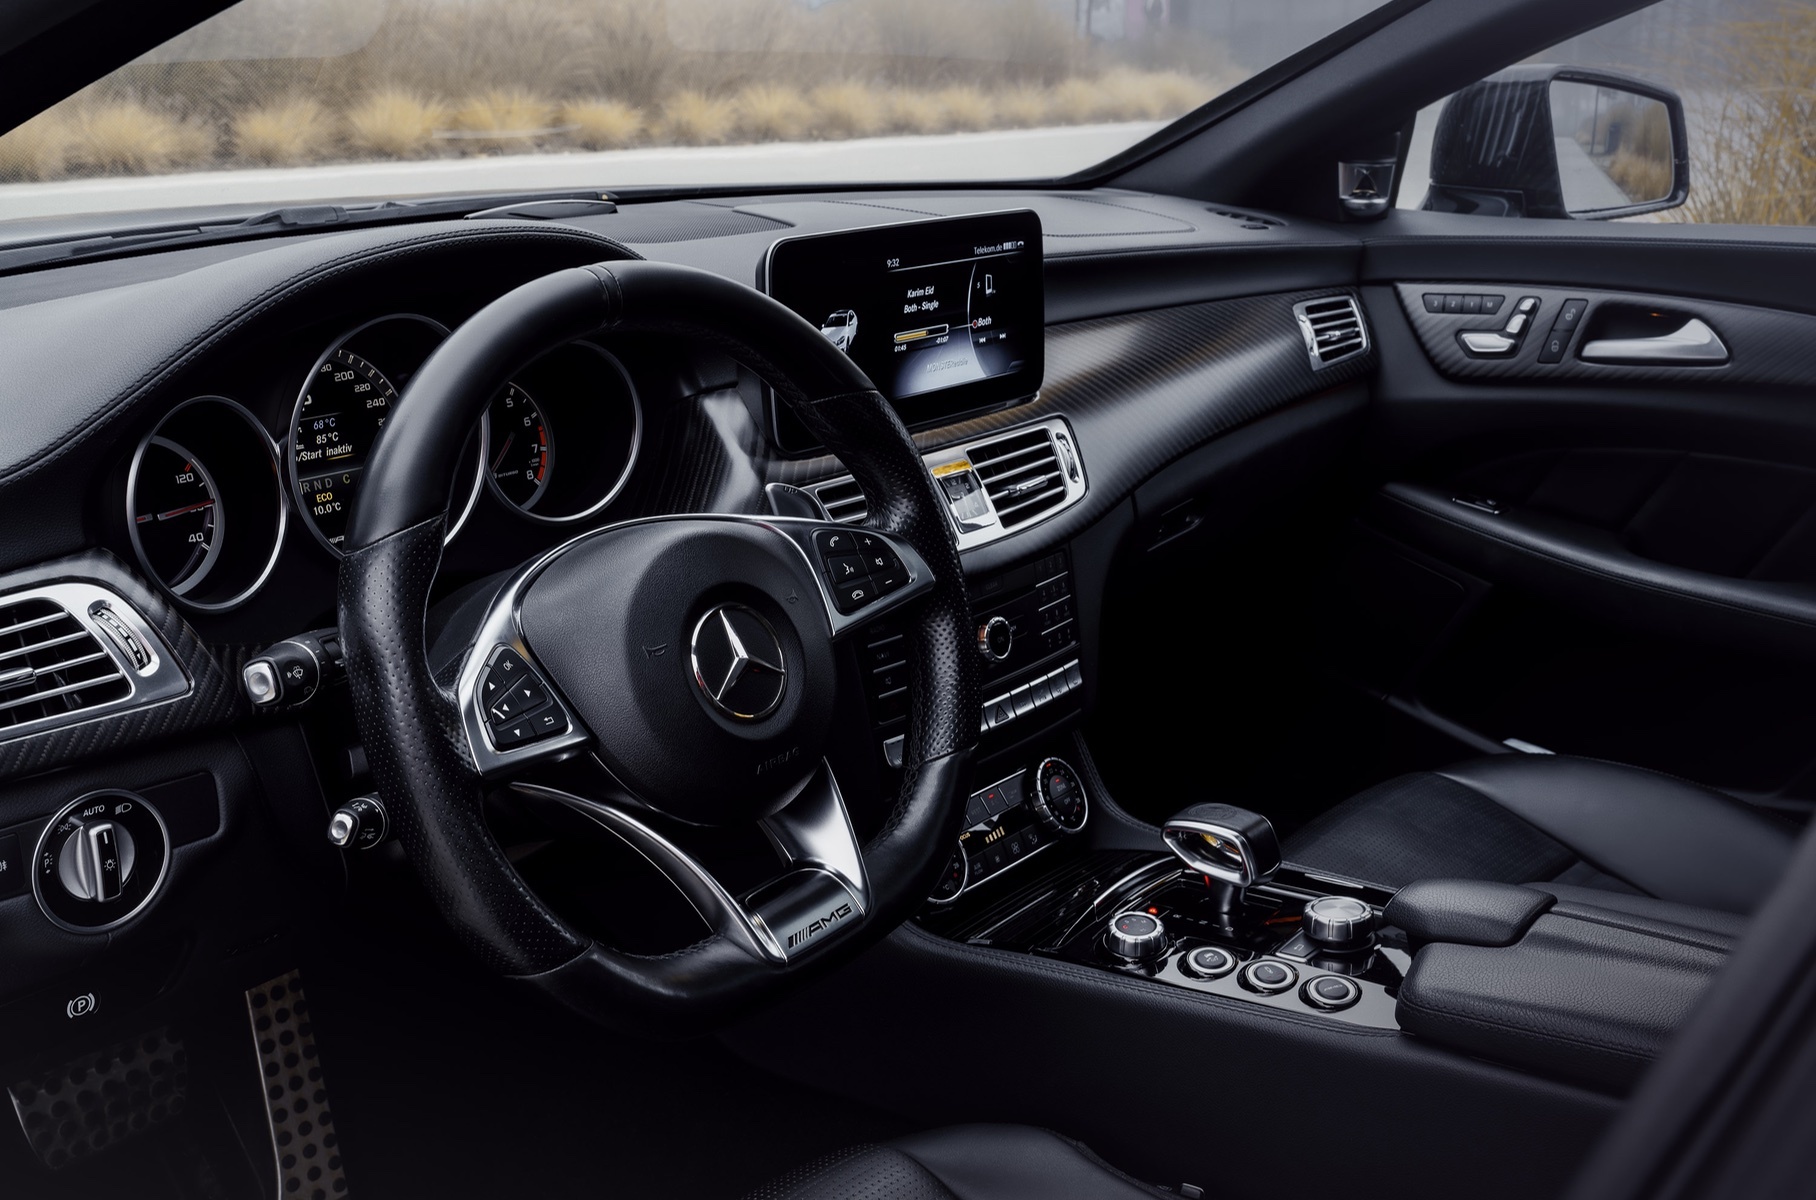 Mercedes-AMG CLS владельца тюнинг-ателье: 742 силы и стелс-окраска